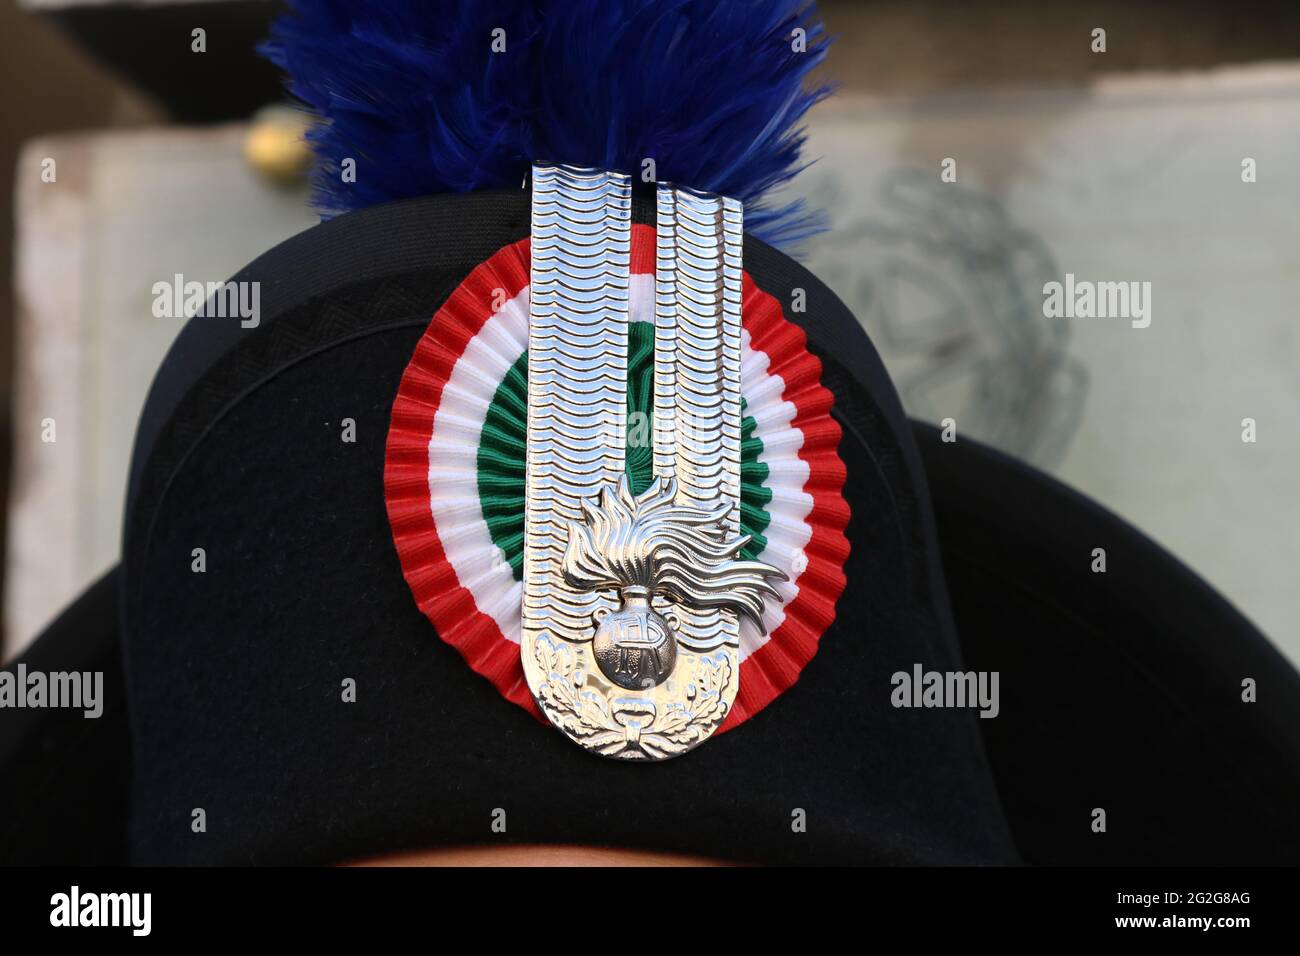 Carabinieri hat immagini e fotografie stock ad alta risoluzione - Alamy